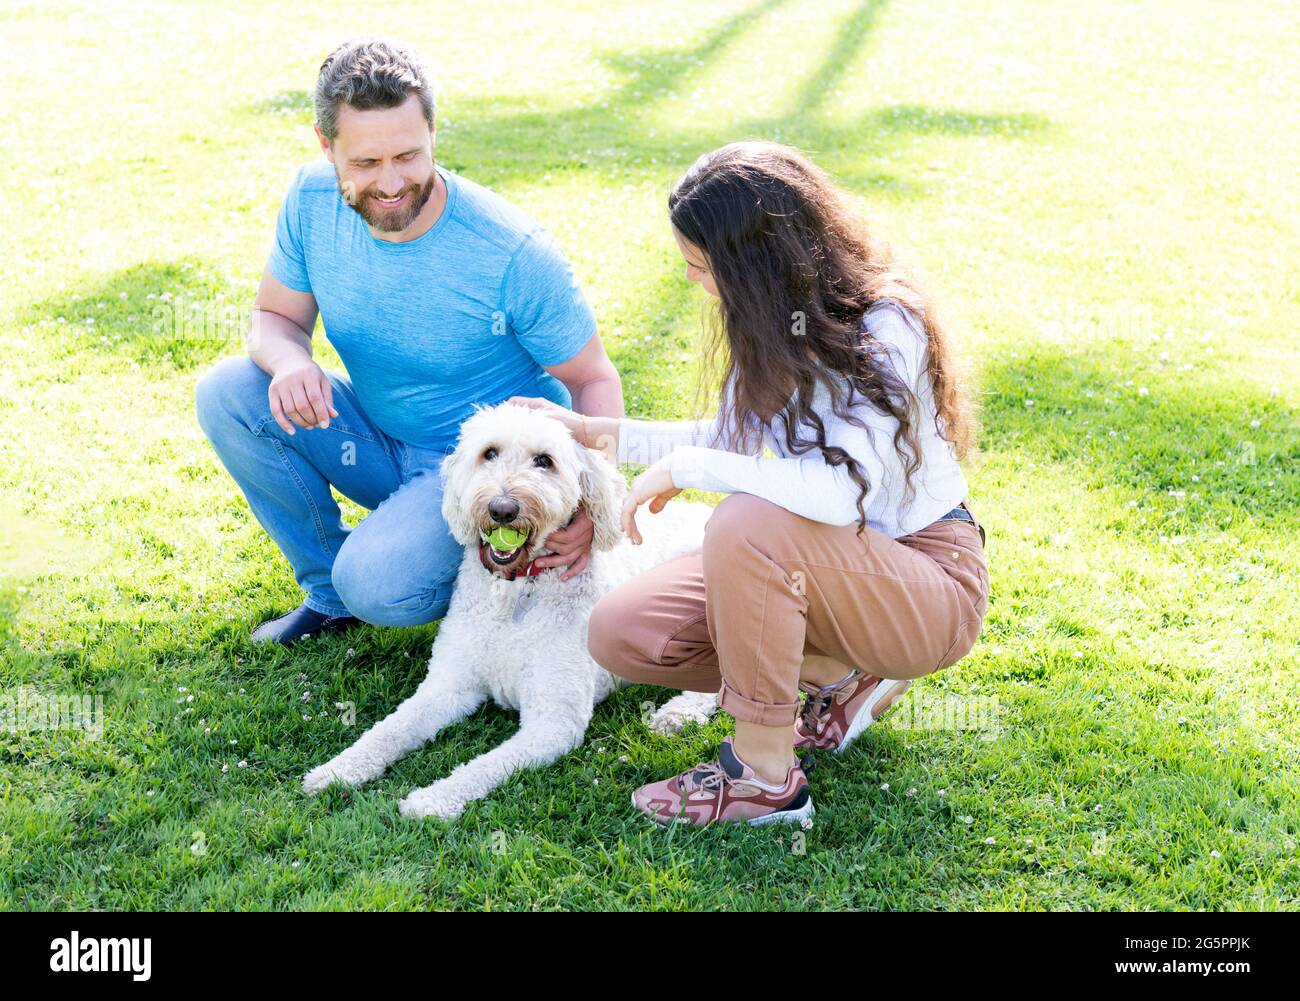 giovane famiglia di uomo e donna gioca con cane animale domestico in parco su erba verde, amante degli animali domestici Foto Stock